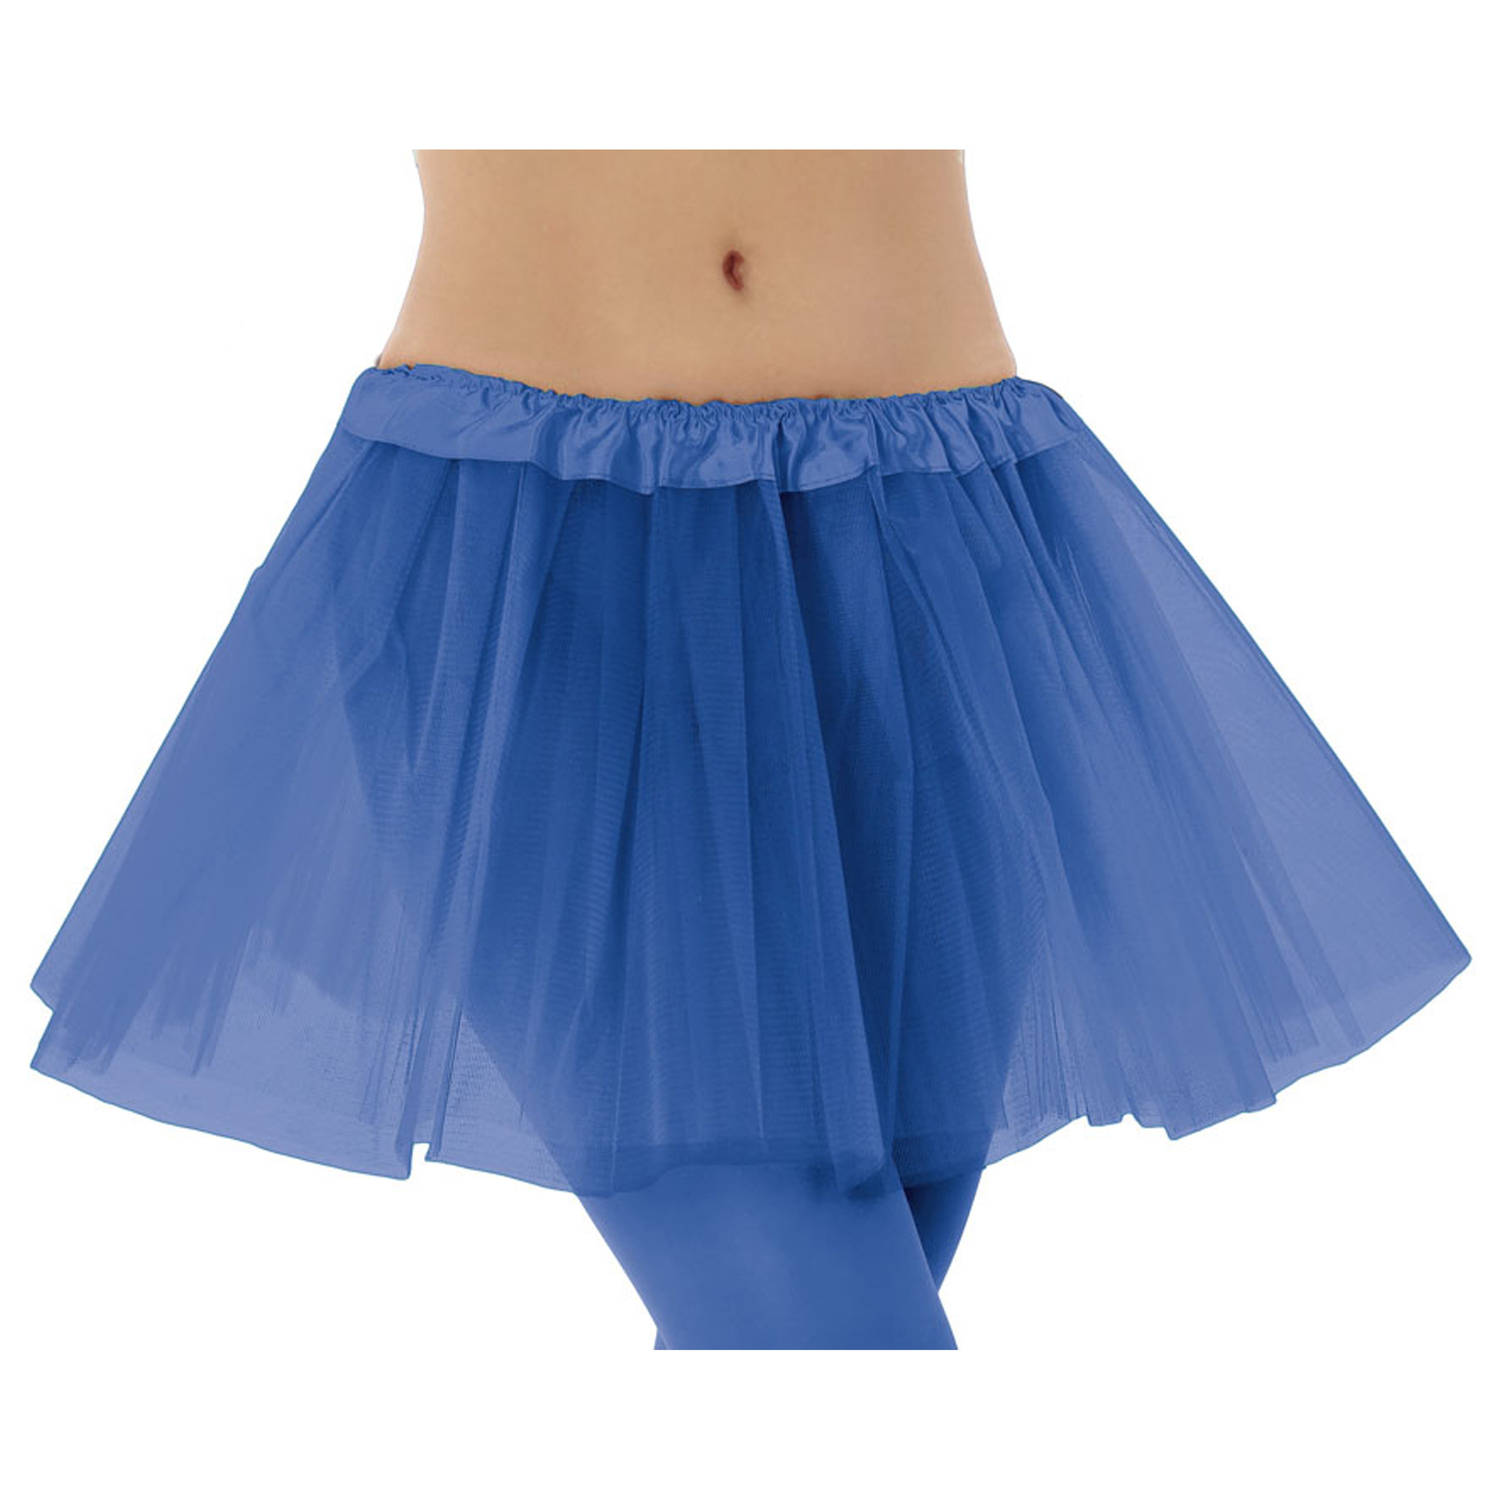 Meisjes verkleed rokje/tutu - tule stof met elastiek - blauw - one size - Carnavalskostuums